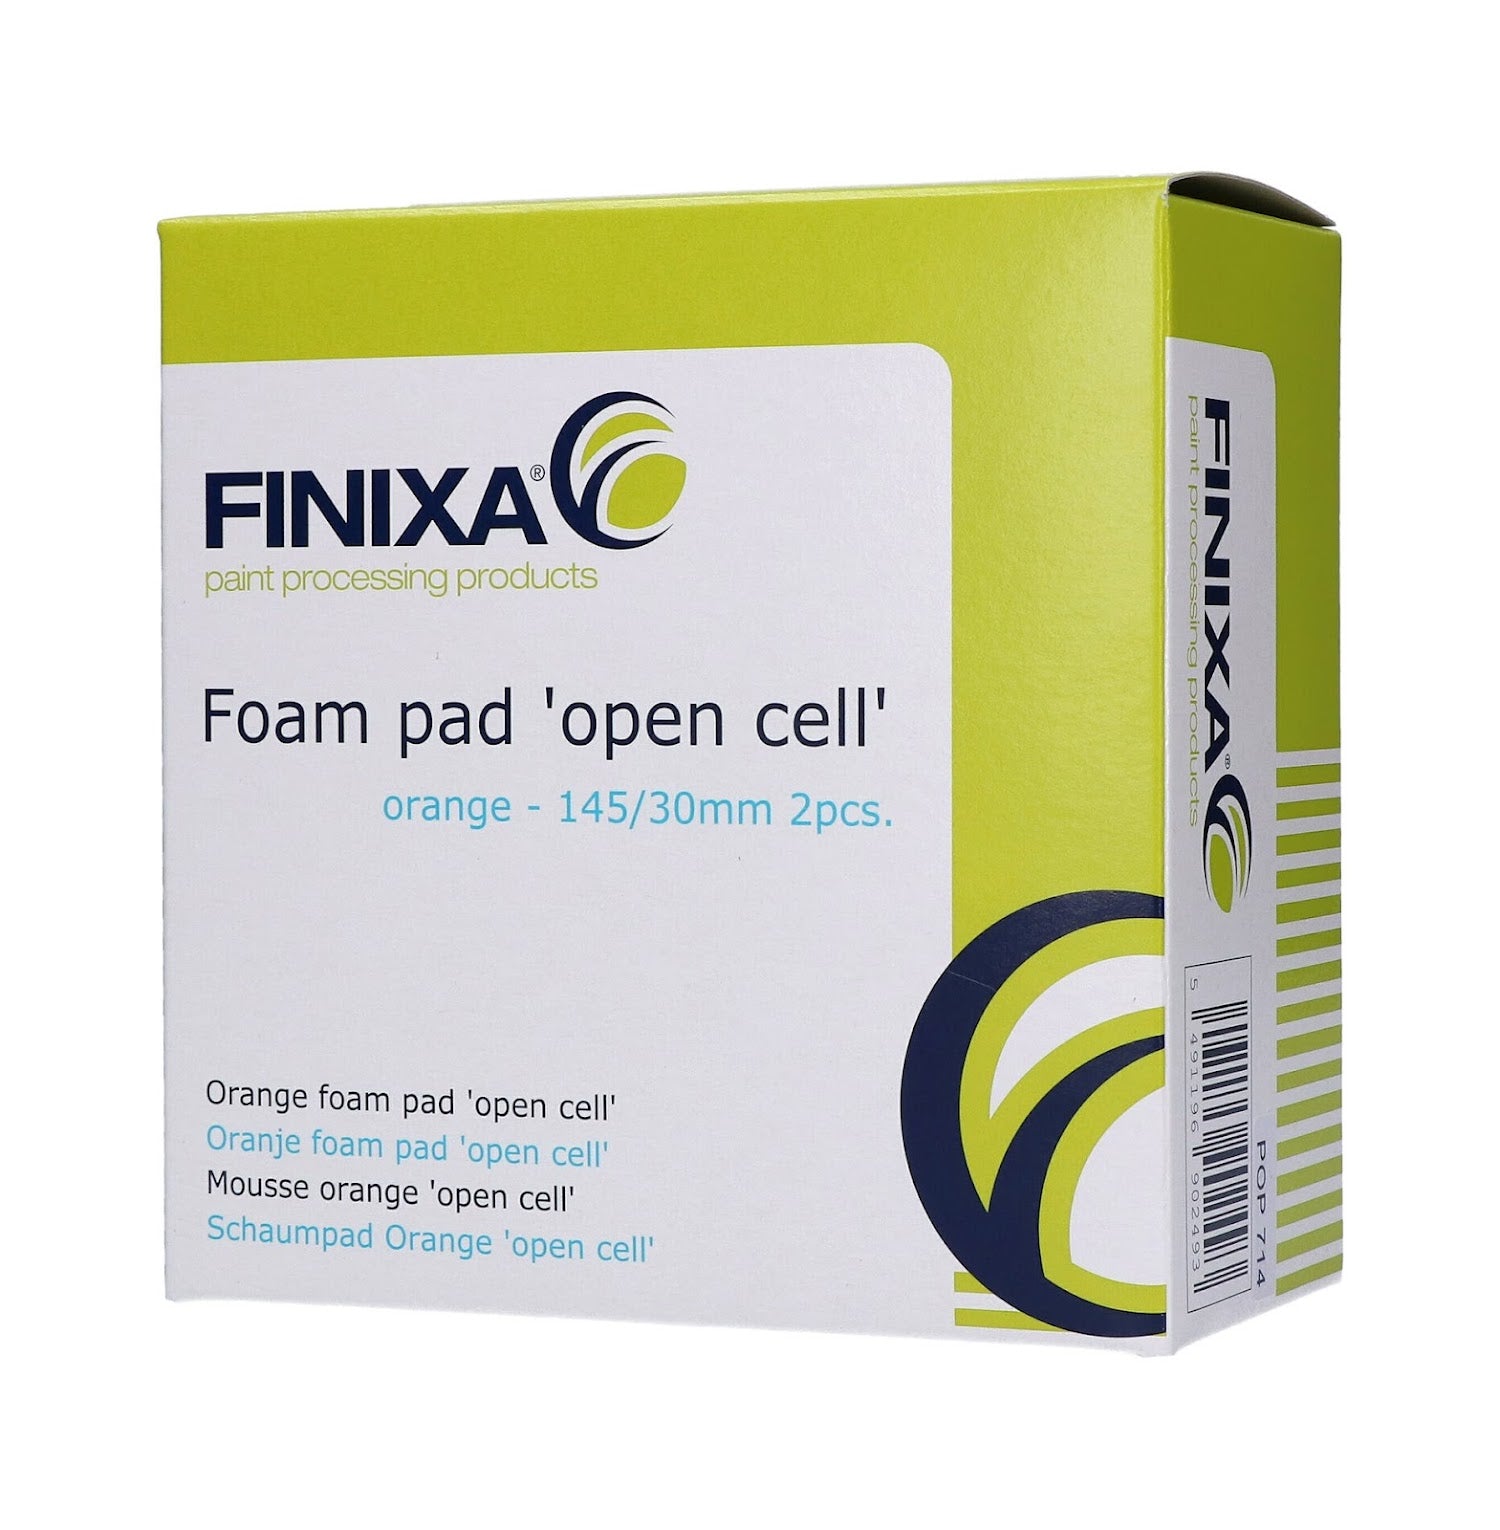 Finixa Foam Pad "OPEN CELL" Orange 145/30